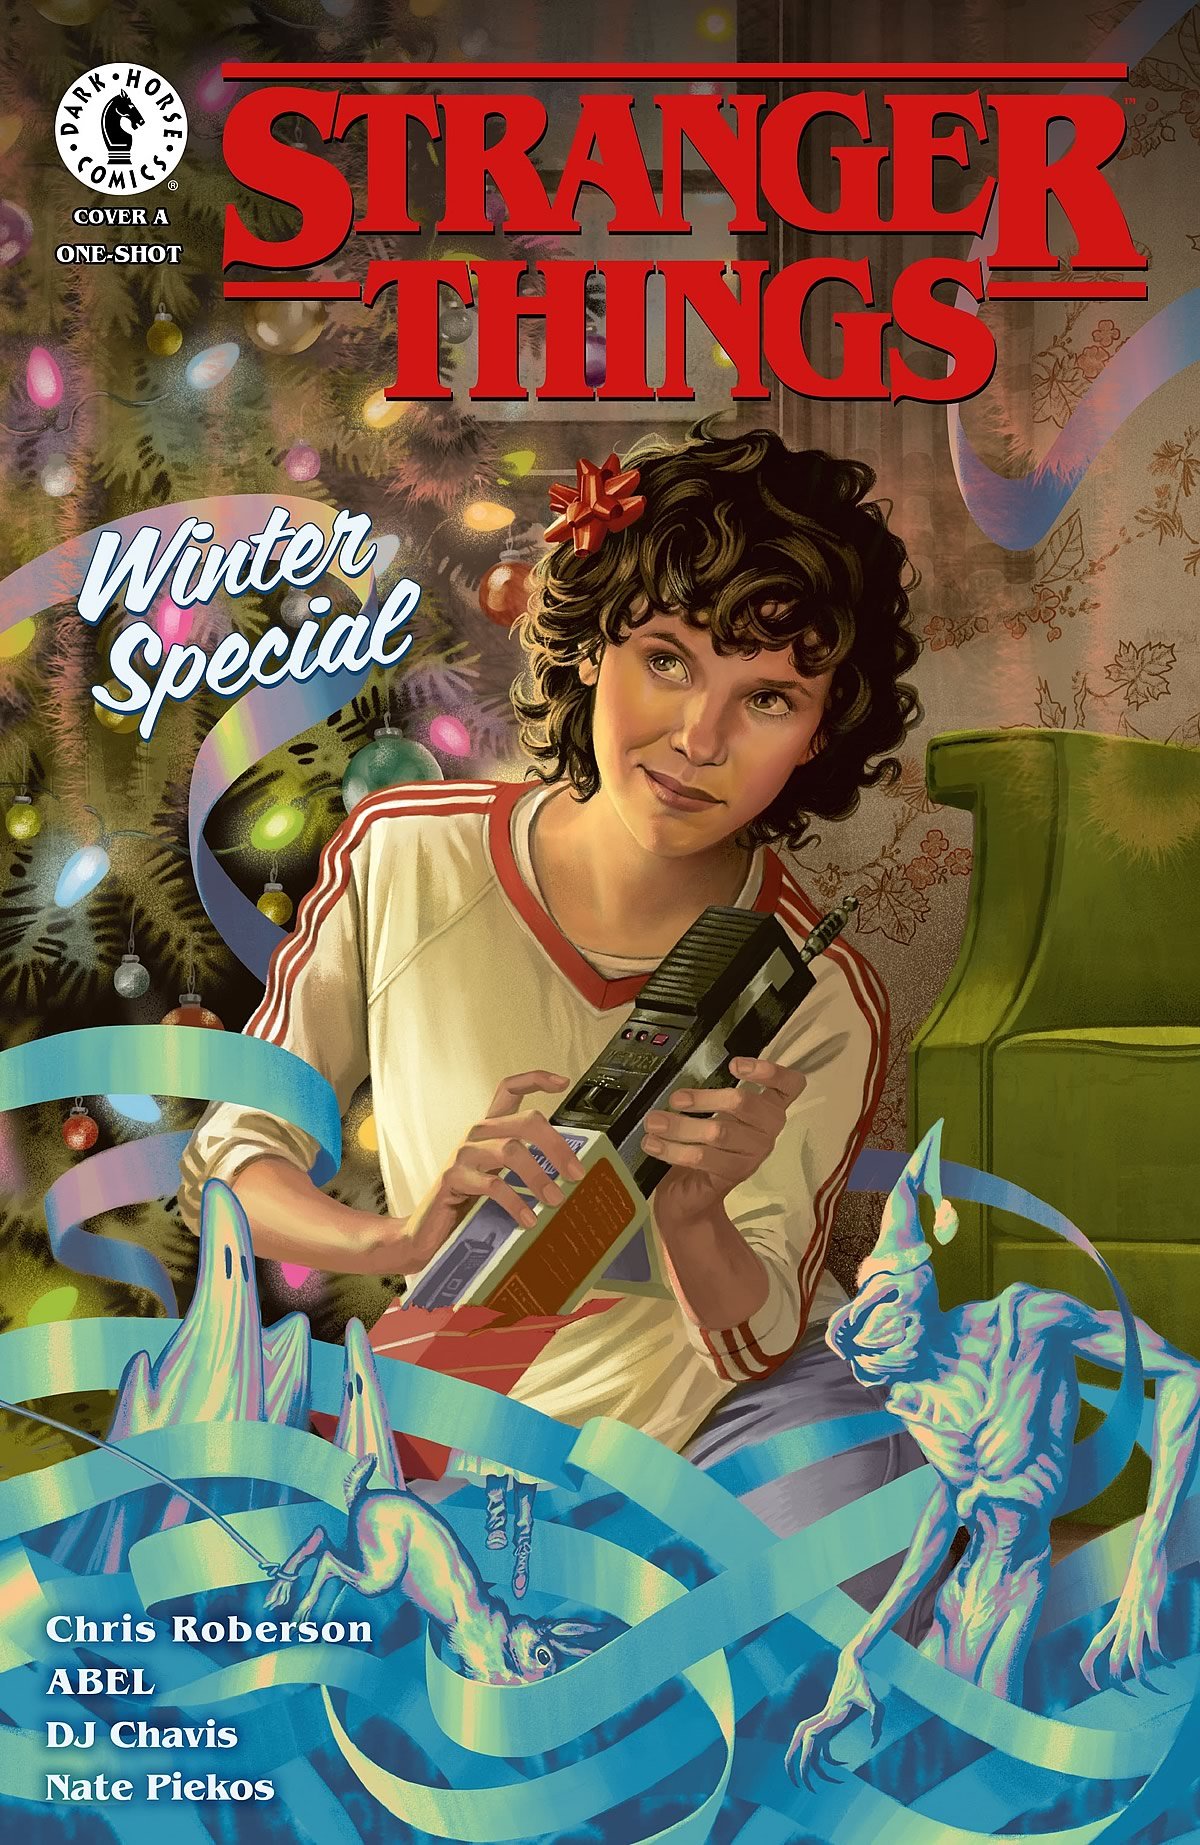 Stranger Things Day 2021 | Dark Horse Comics edição temática dos quadrinhos de Stranger Things